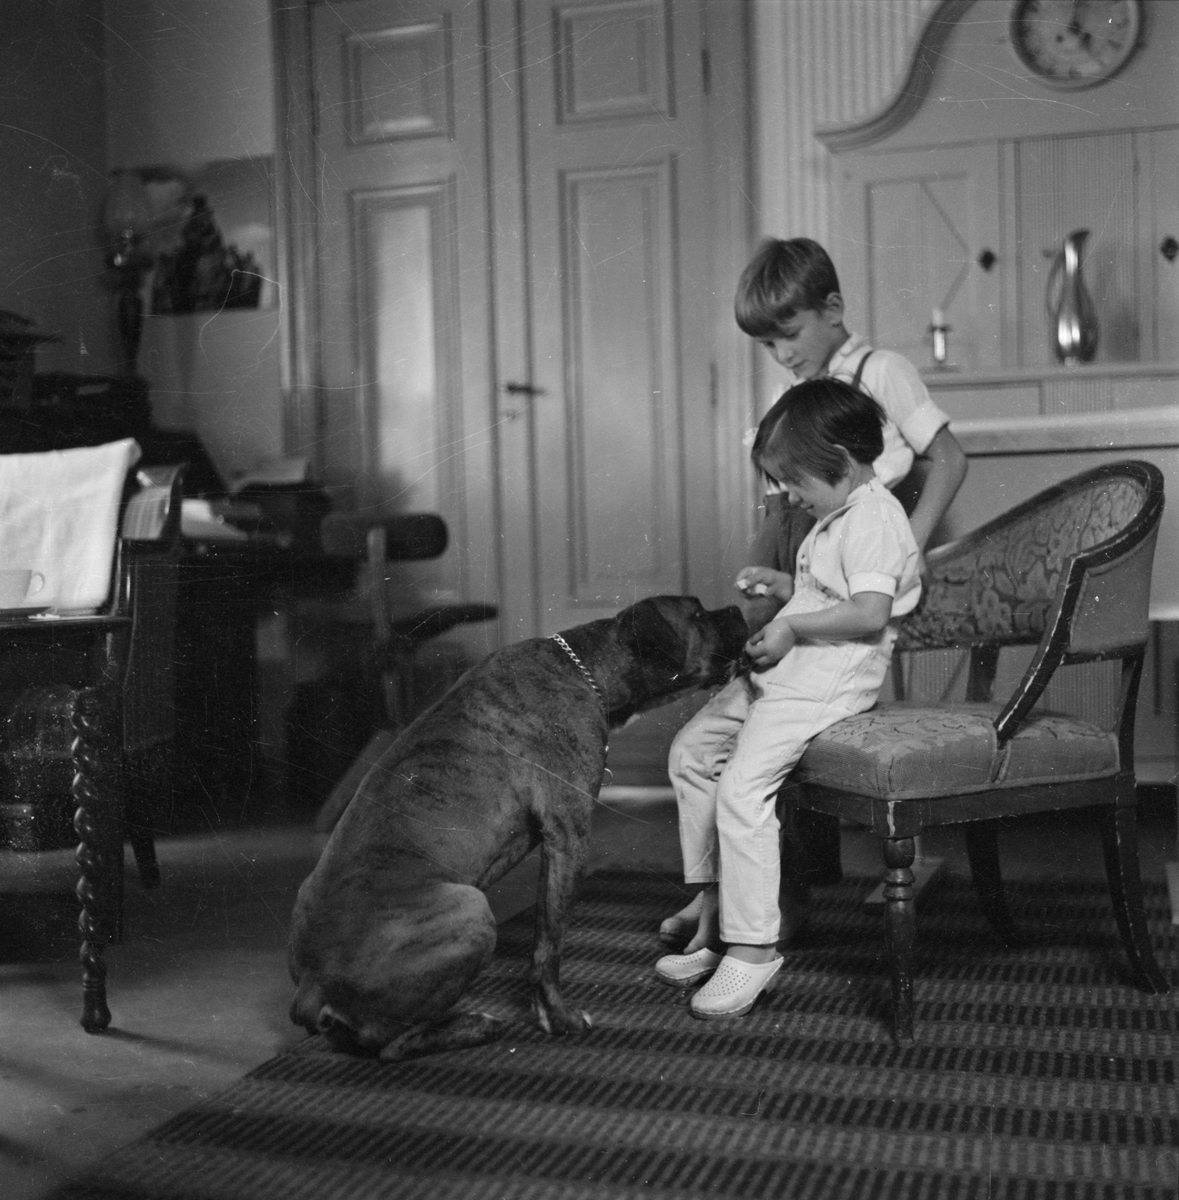 Fotograf Gunnar Sundgrens barnbarn med fotografens hund Klumpen, sannolikt hemma i Uppsala